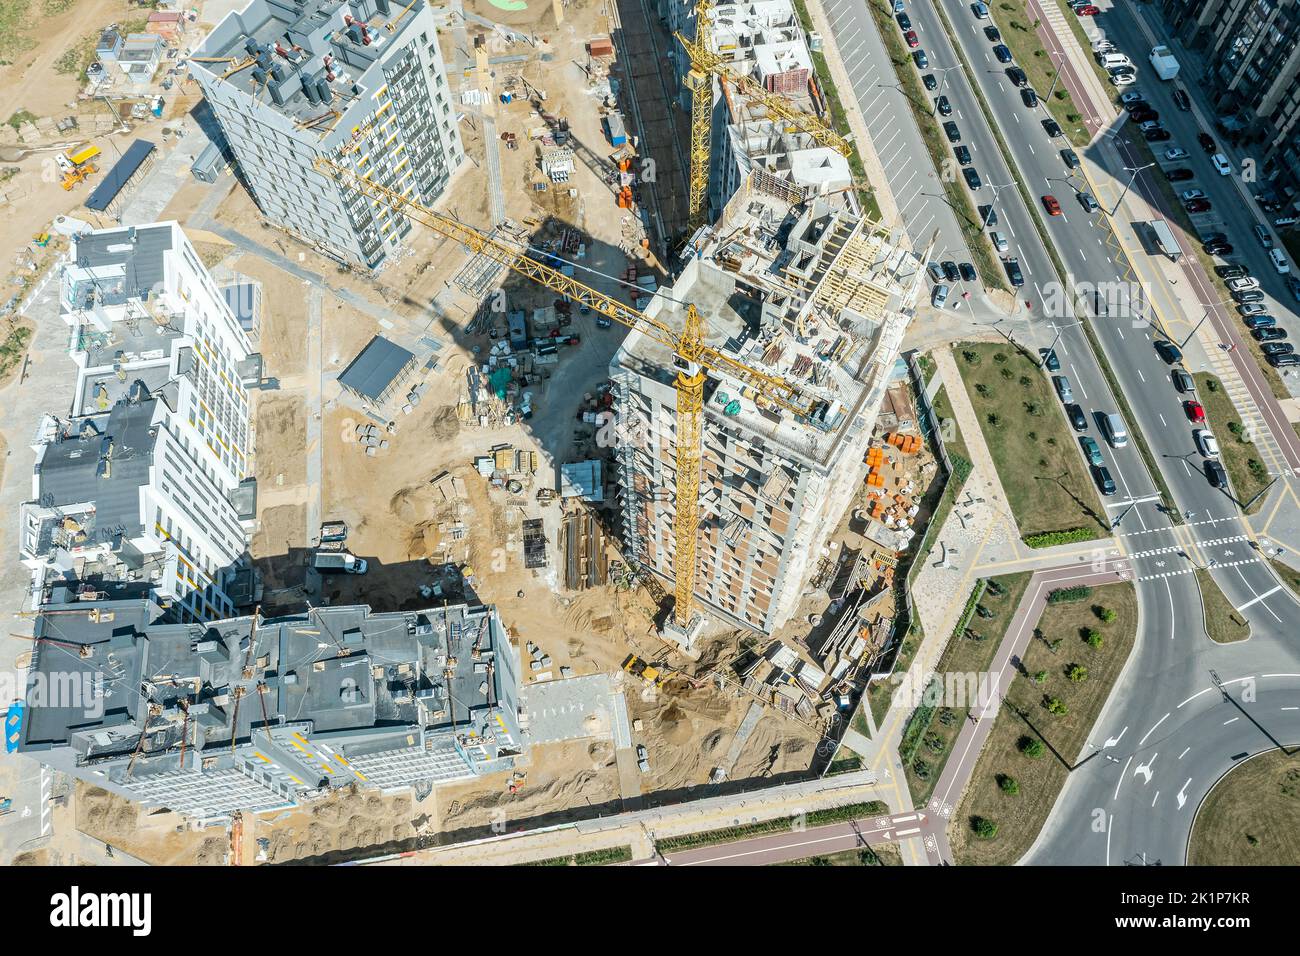 zona residenziale in costruzione. alto edificio con gru a torre funzionante. vista aerea. Foto Stock